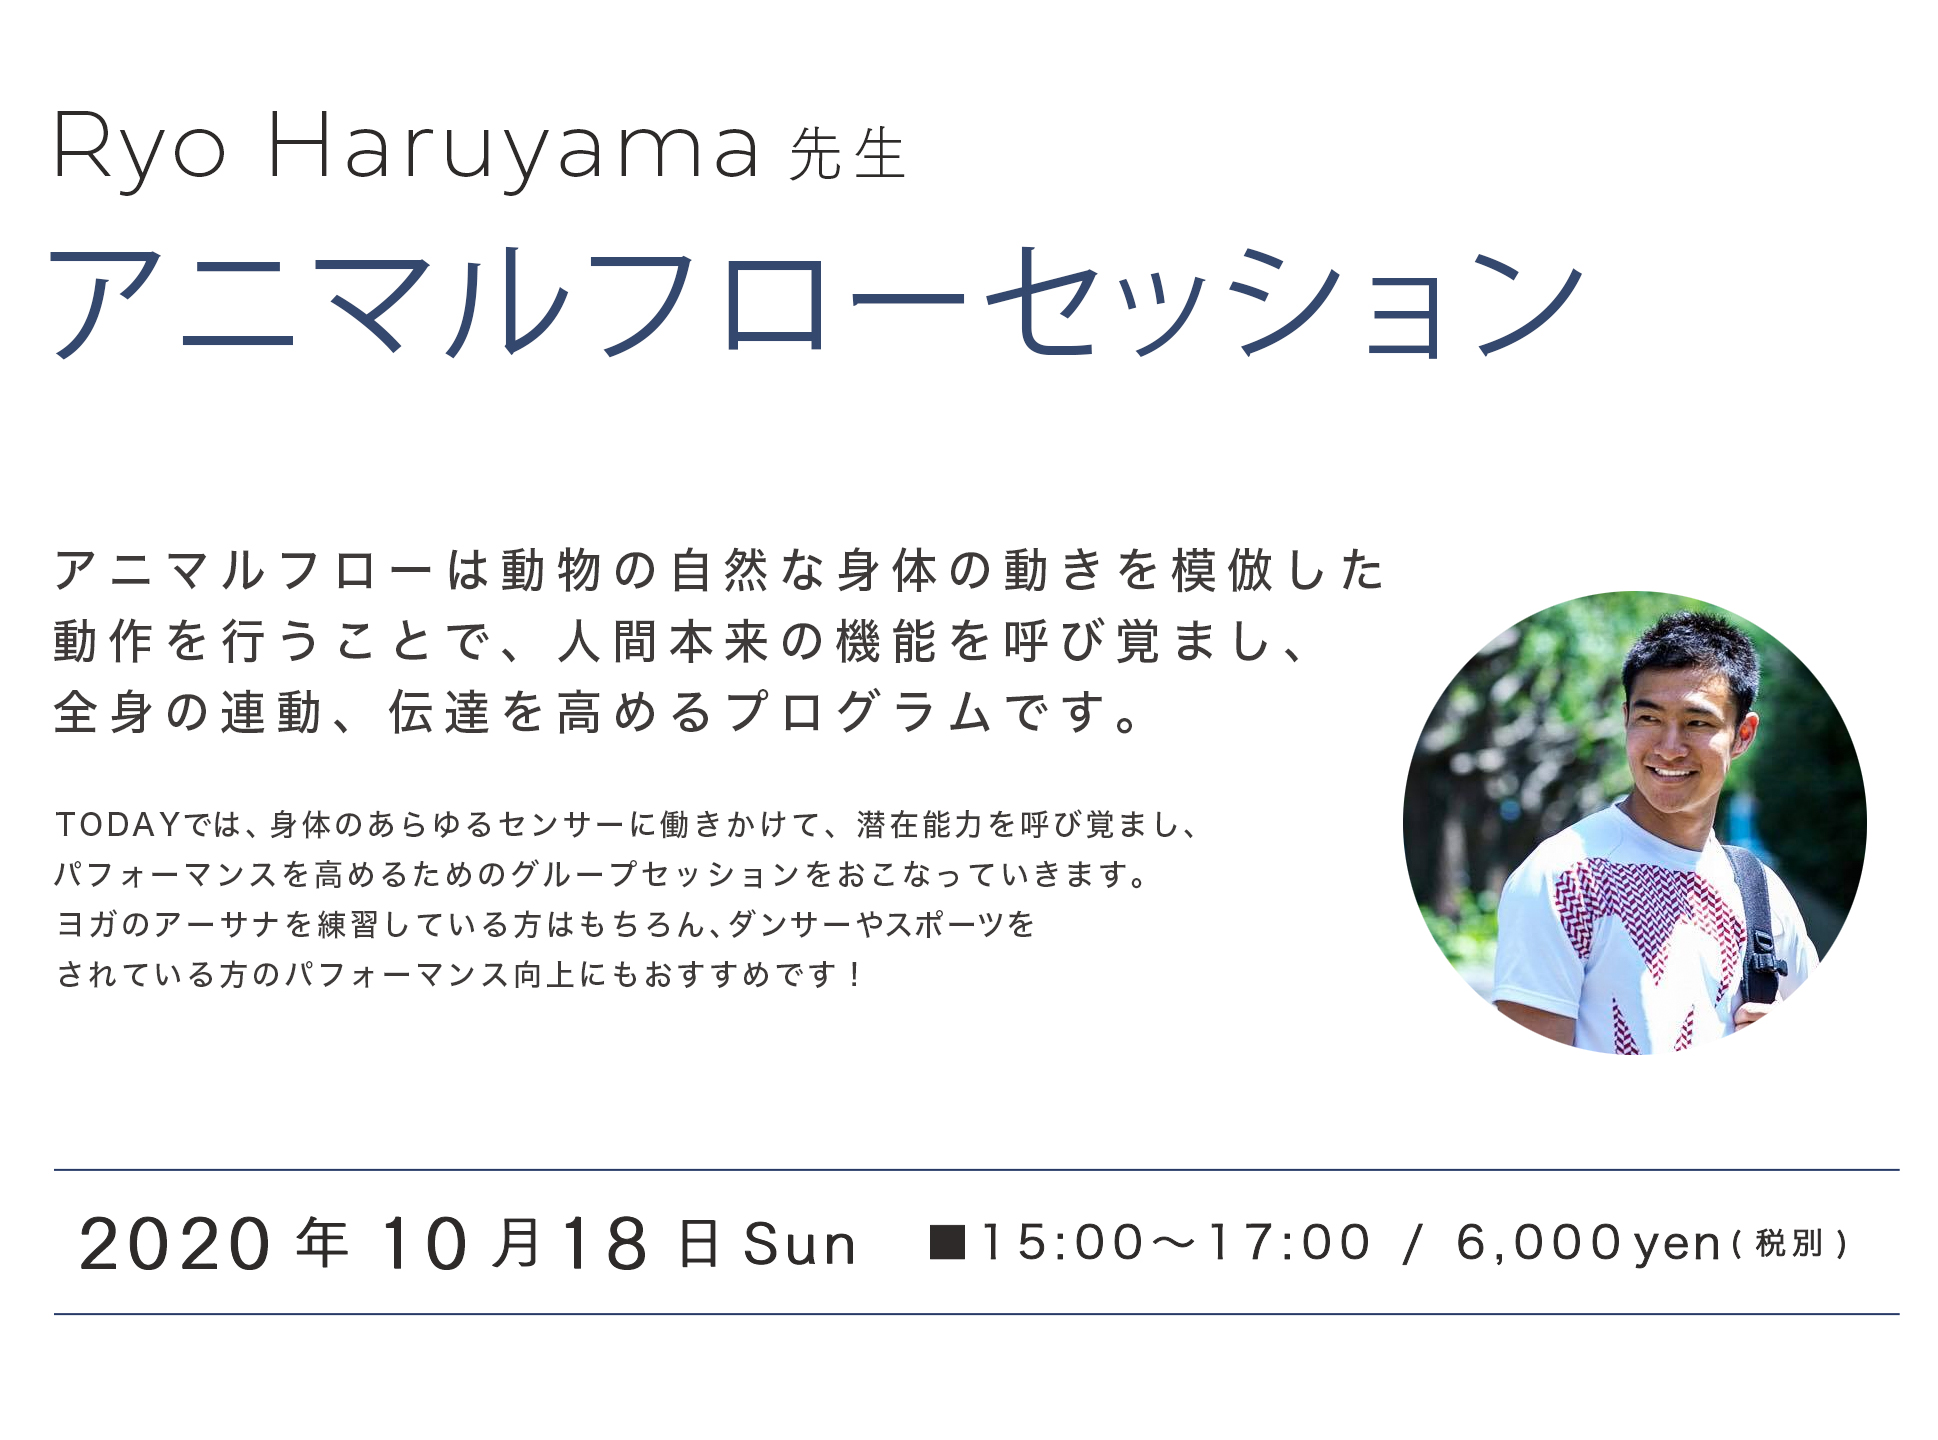 Ryo Haruyama